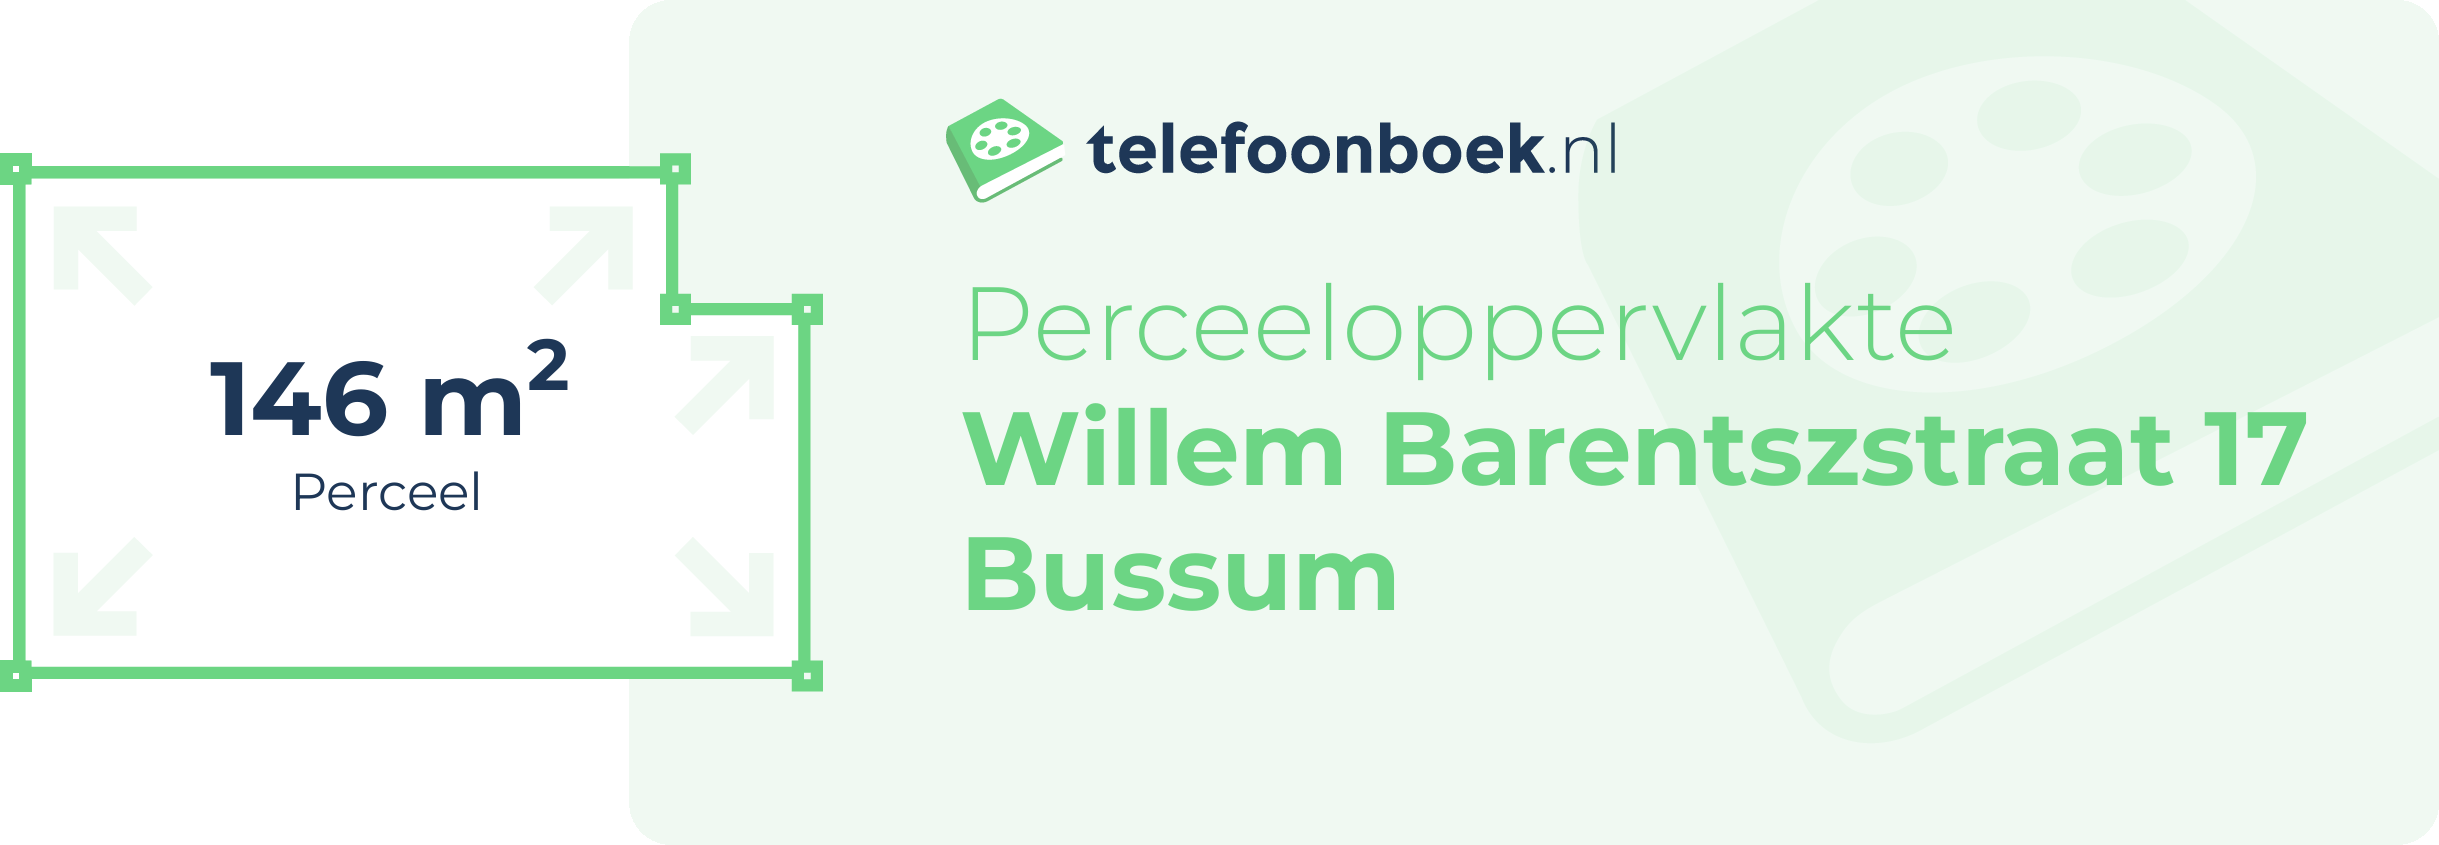 Perceeloppervlakte Willem Barentszstraat 17 Bussum